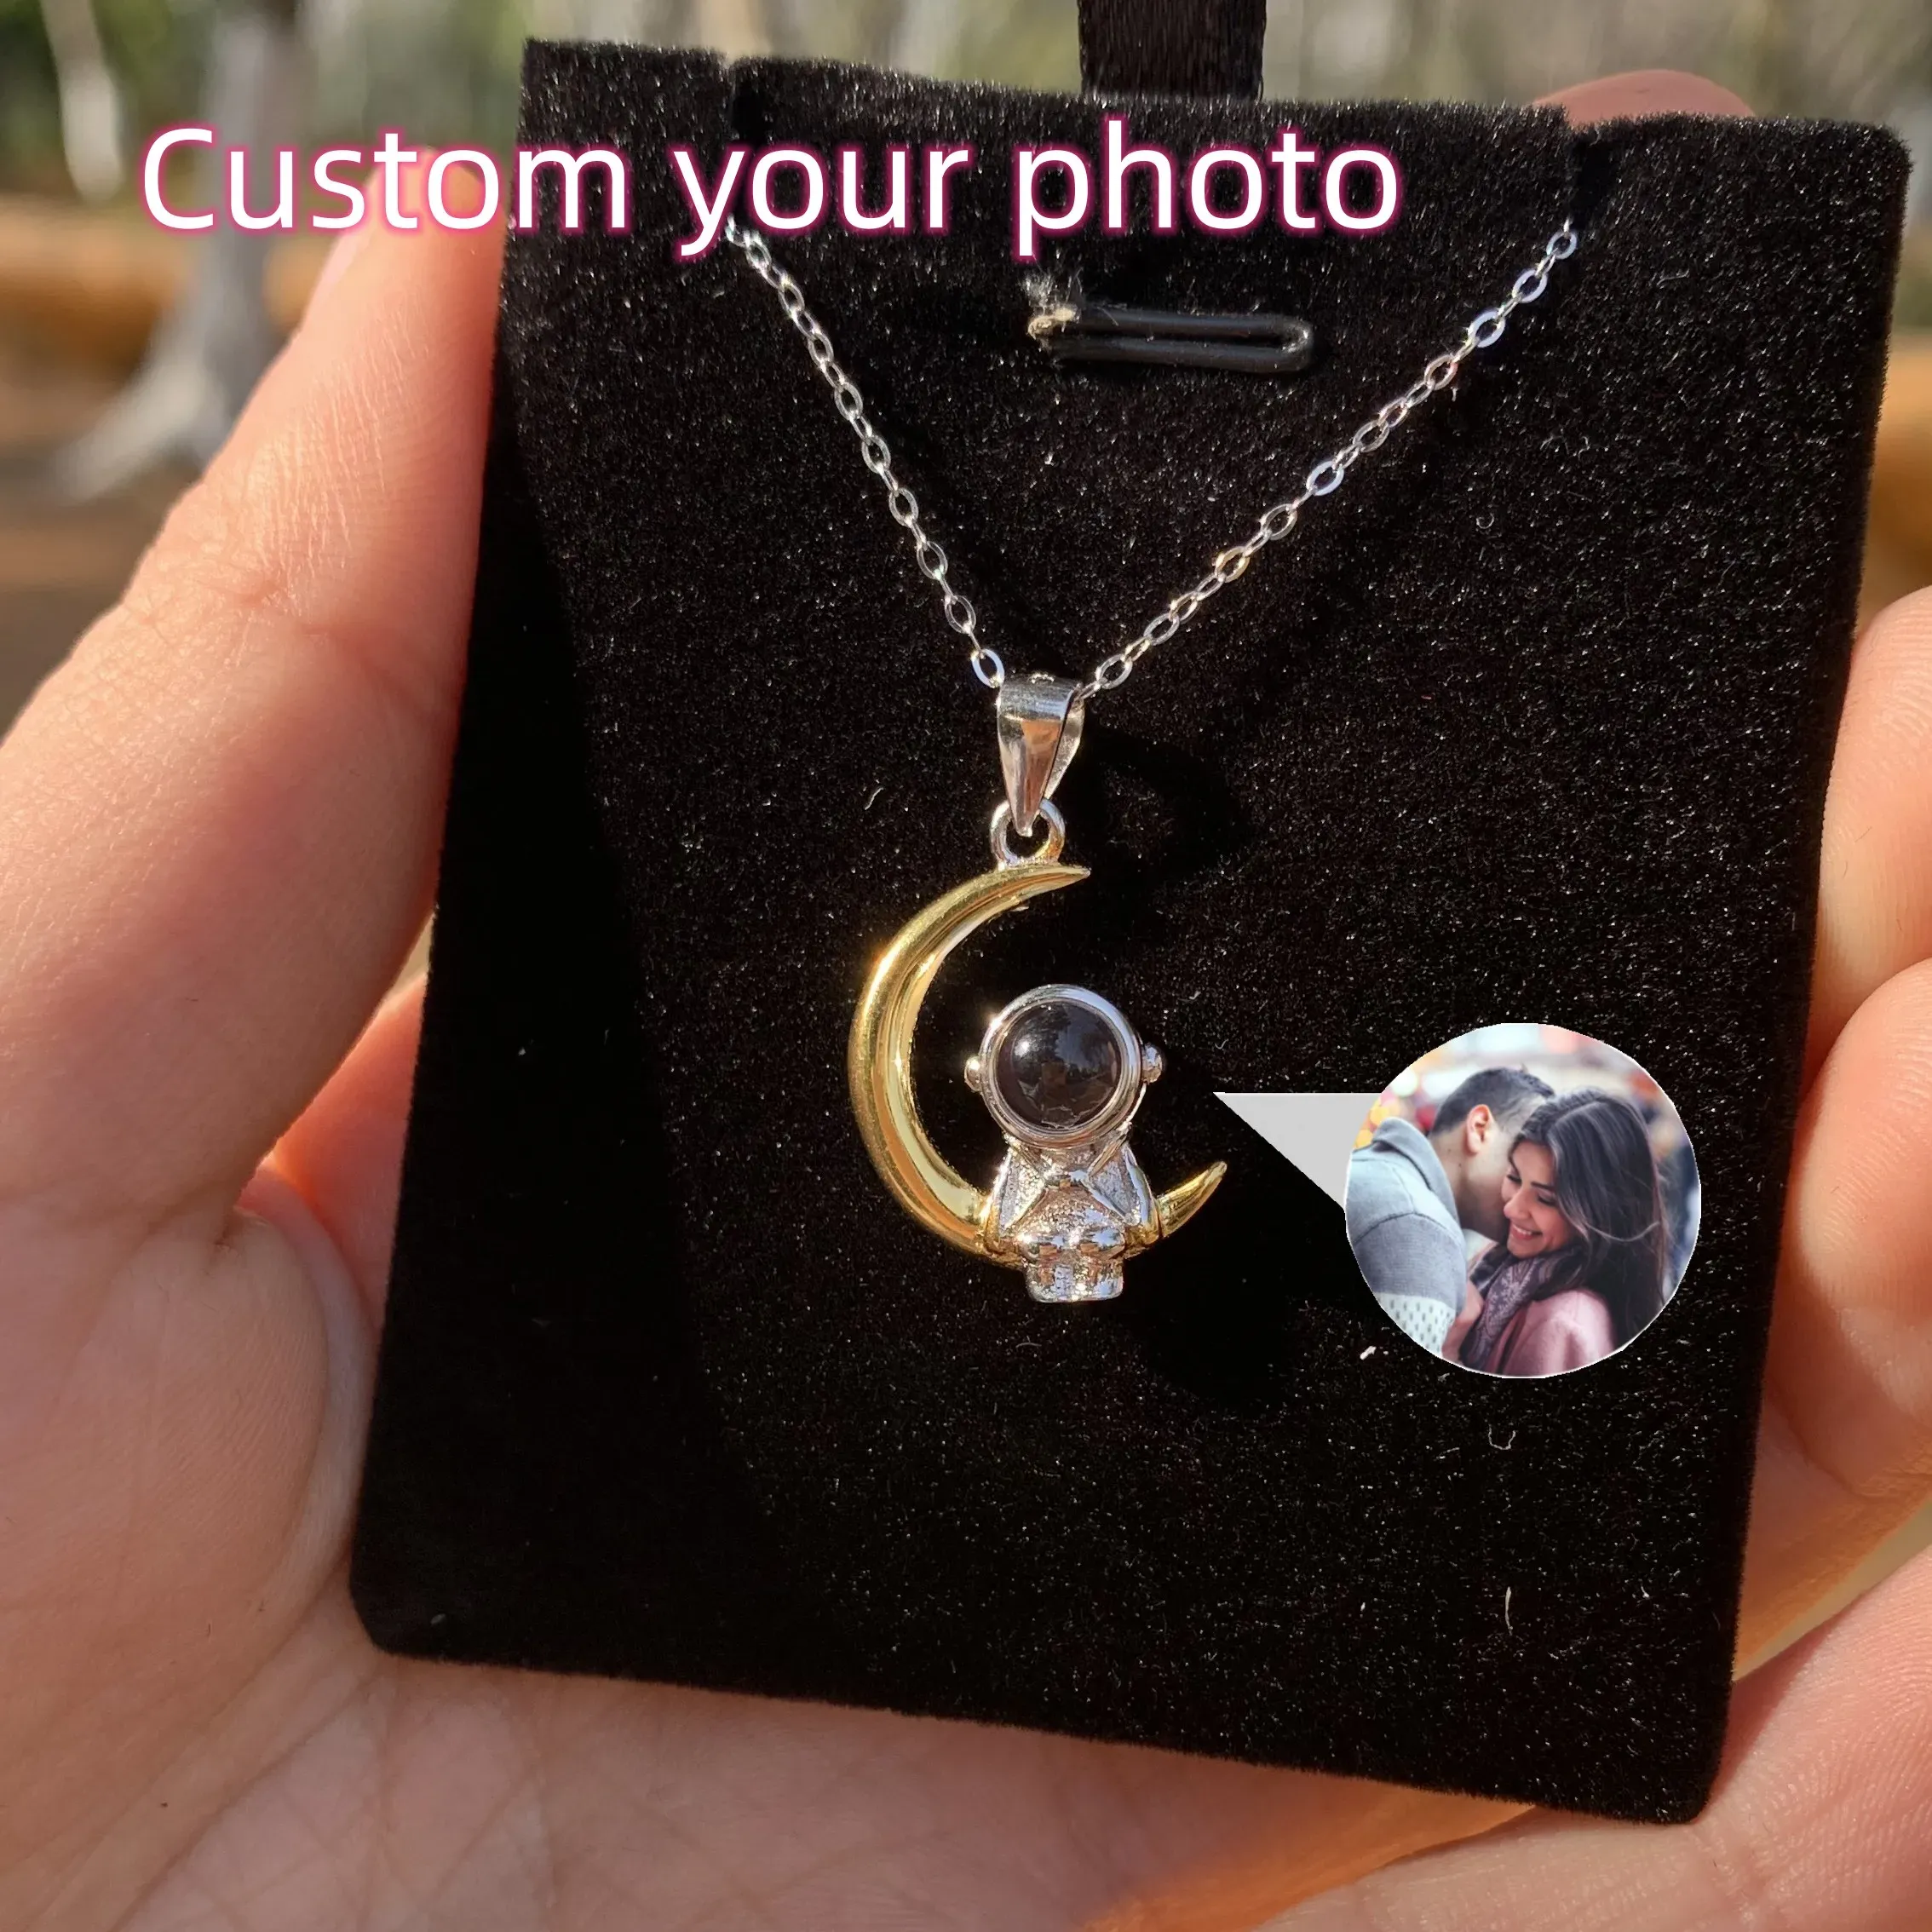 Collane S925 Collana di proiezione fotografica personalizzata Moon e stella Proiezione personalizzata collana colorata Image Family Memory Gift